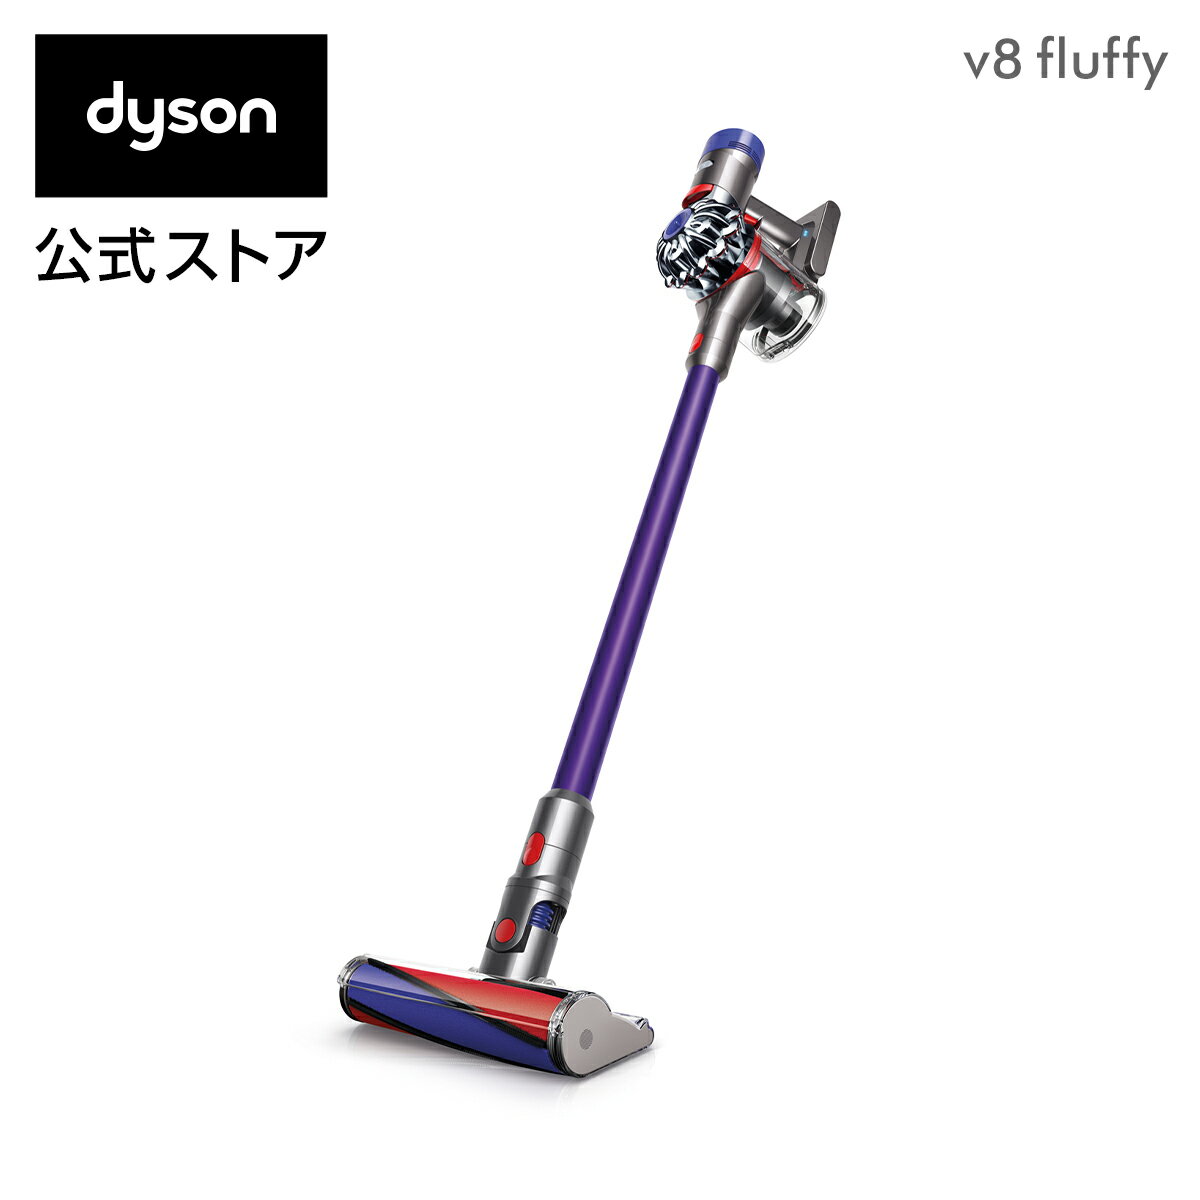 ダイソン Dyson V8 Fluffy サイクロン式 コードレス掃除機 dyson SV10FF3 2018年モデルの写真